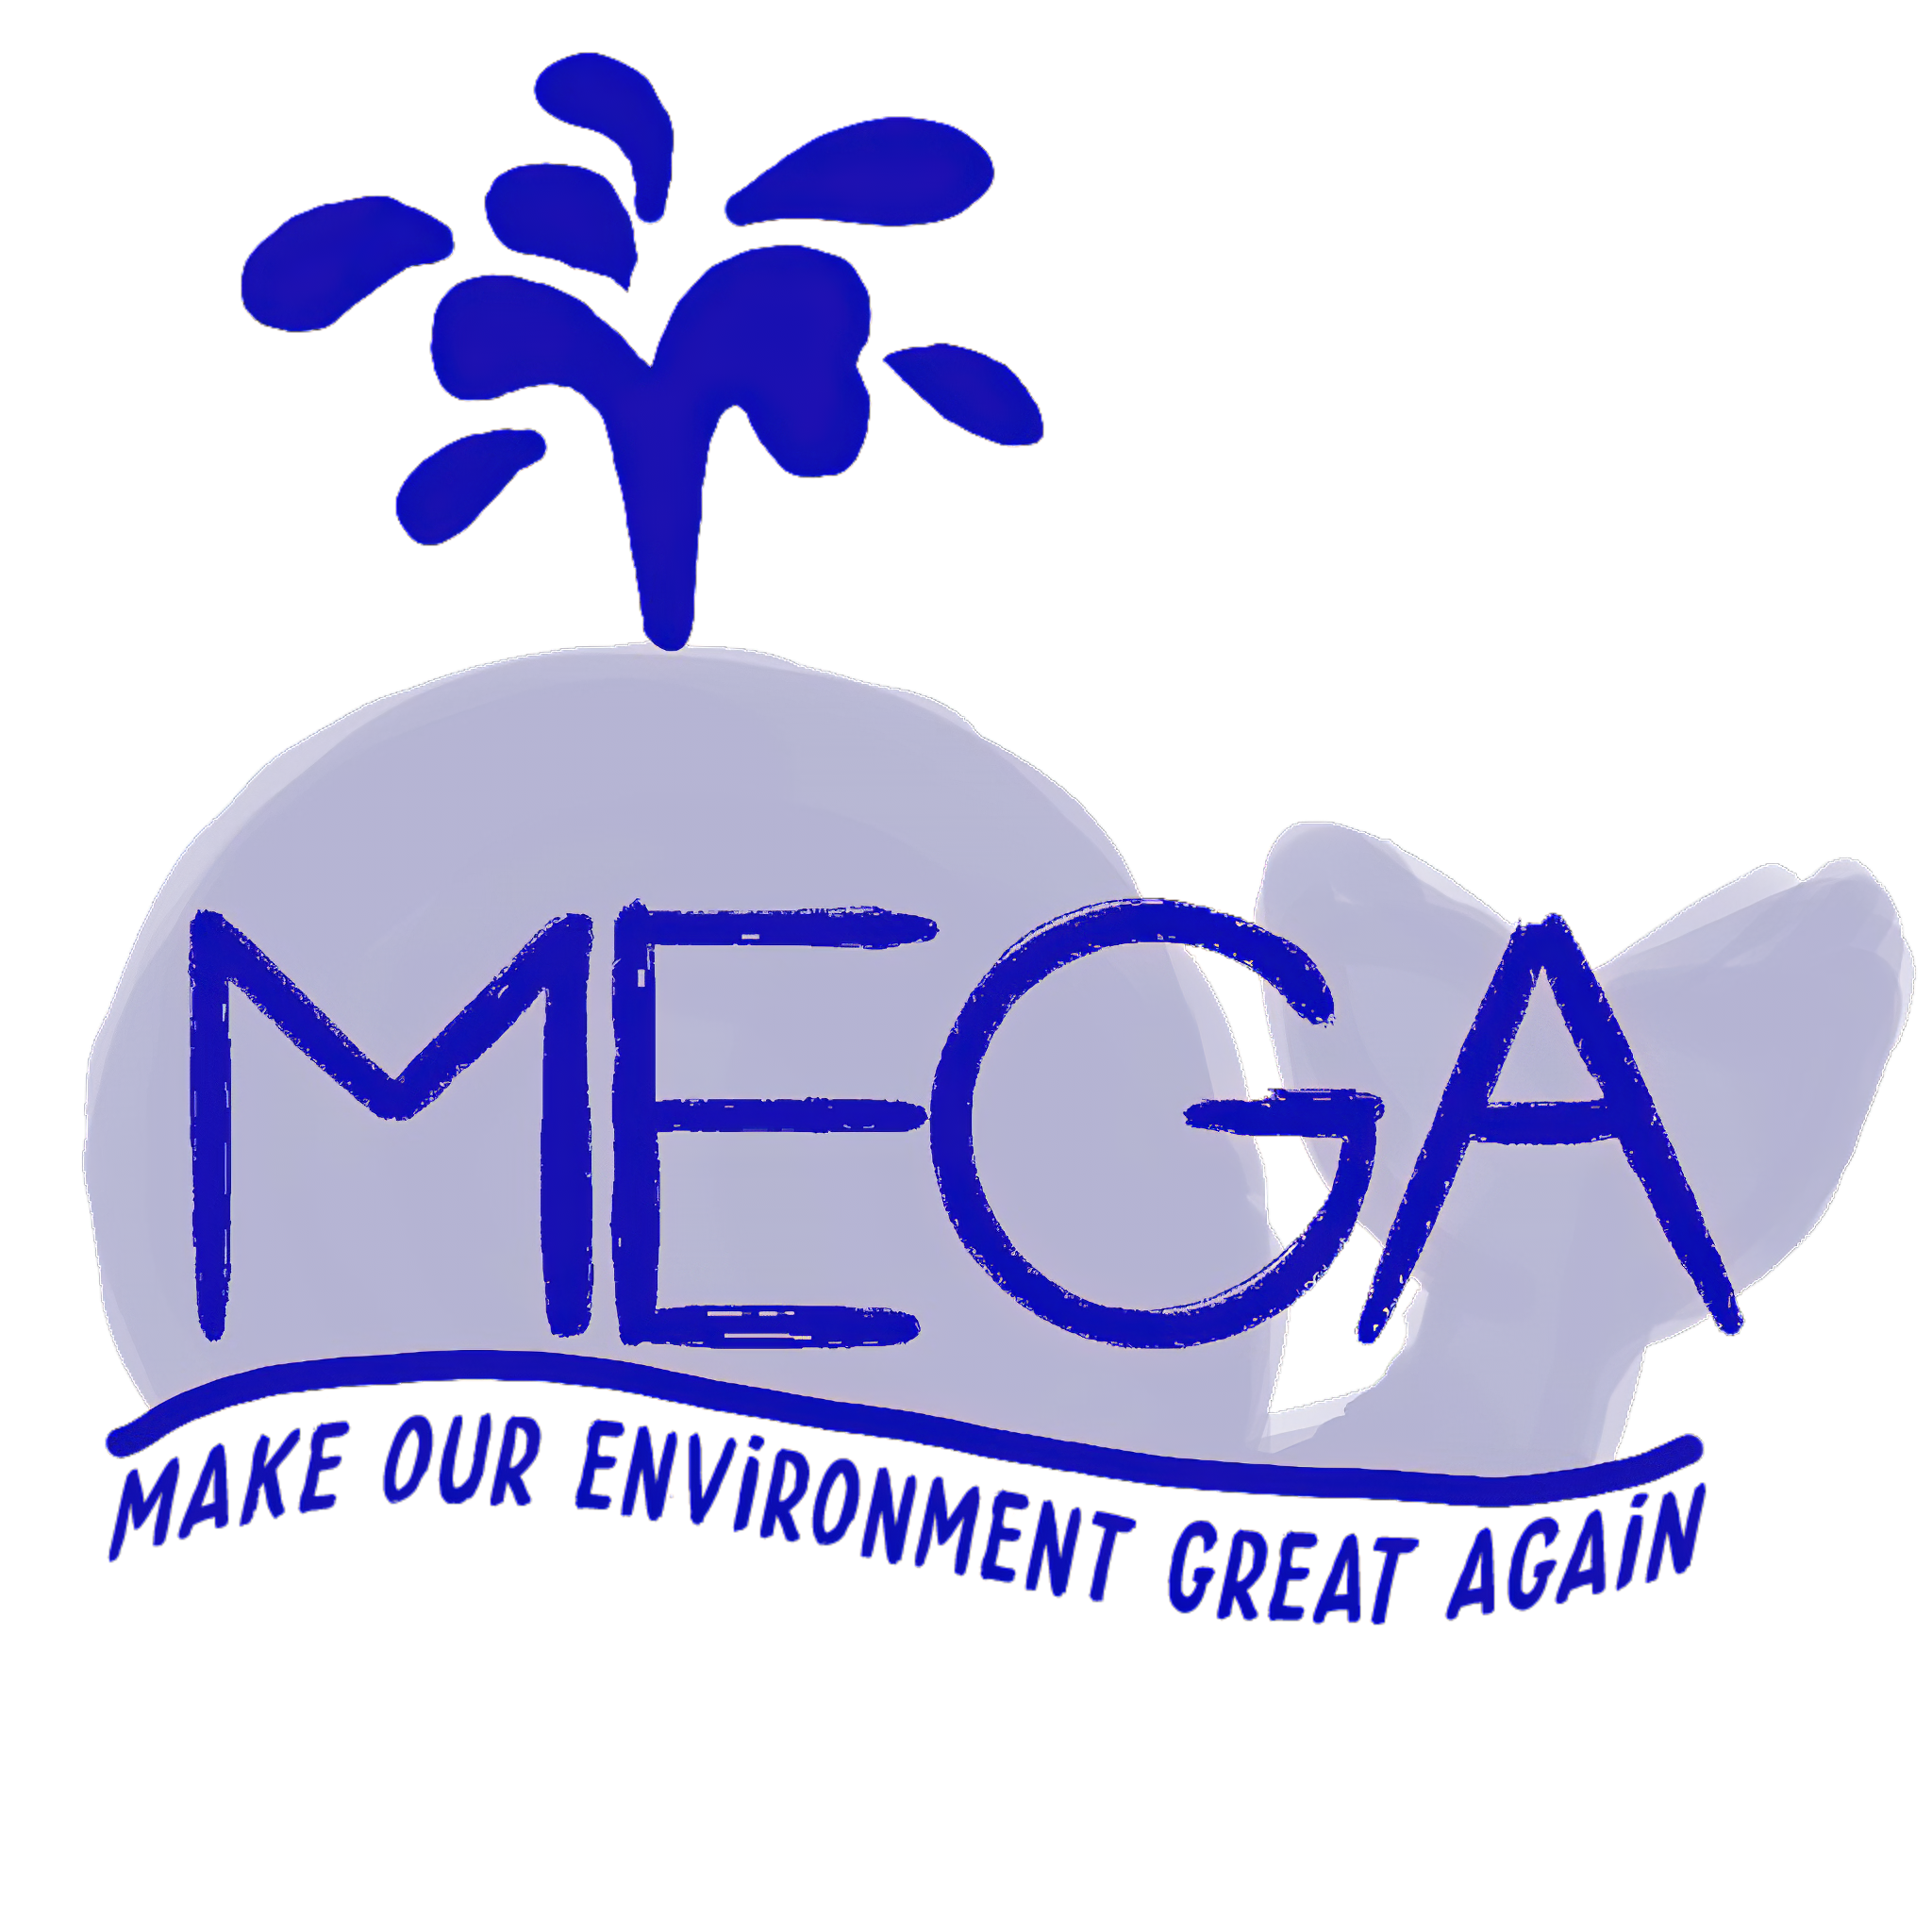 http://philosophia.lu/megapics/megalux_logo.png